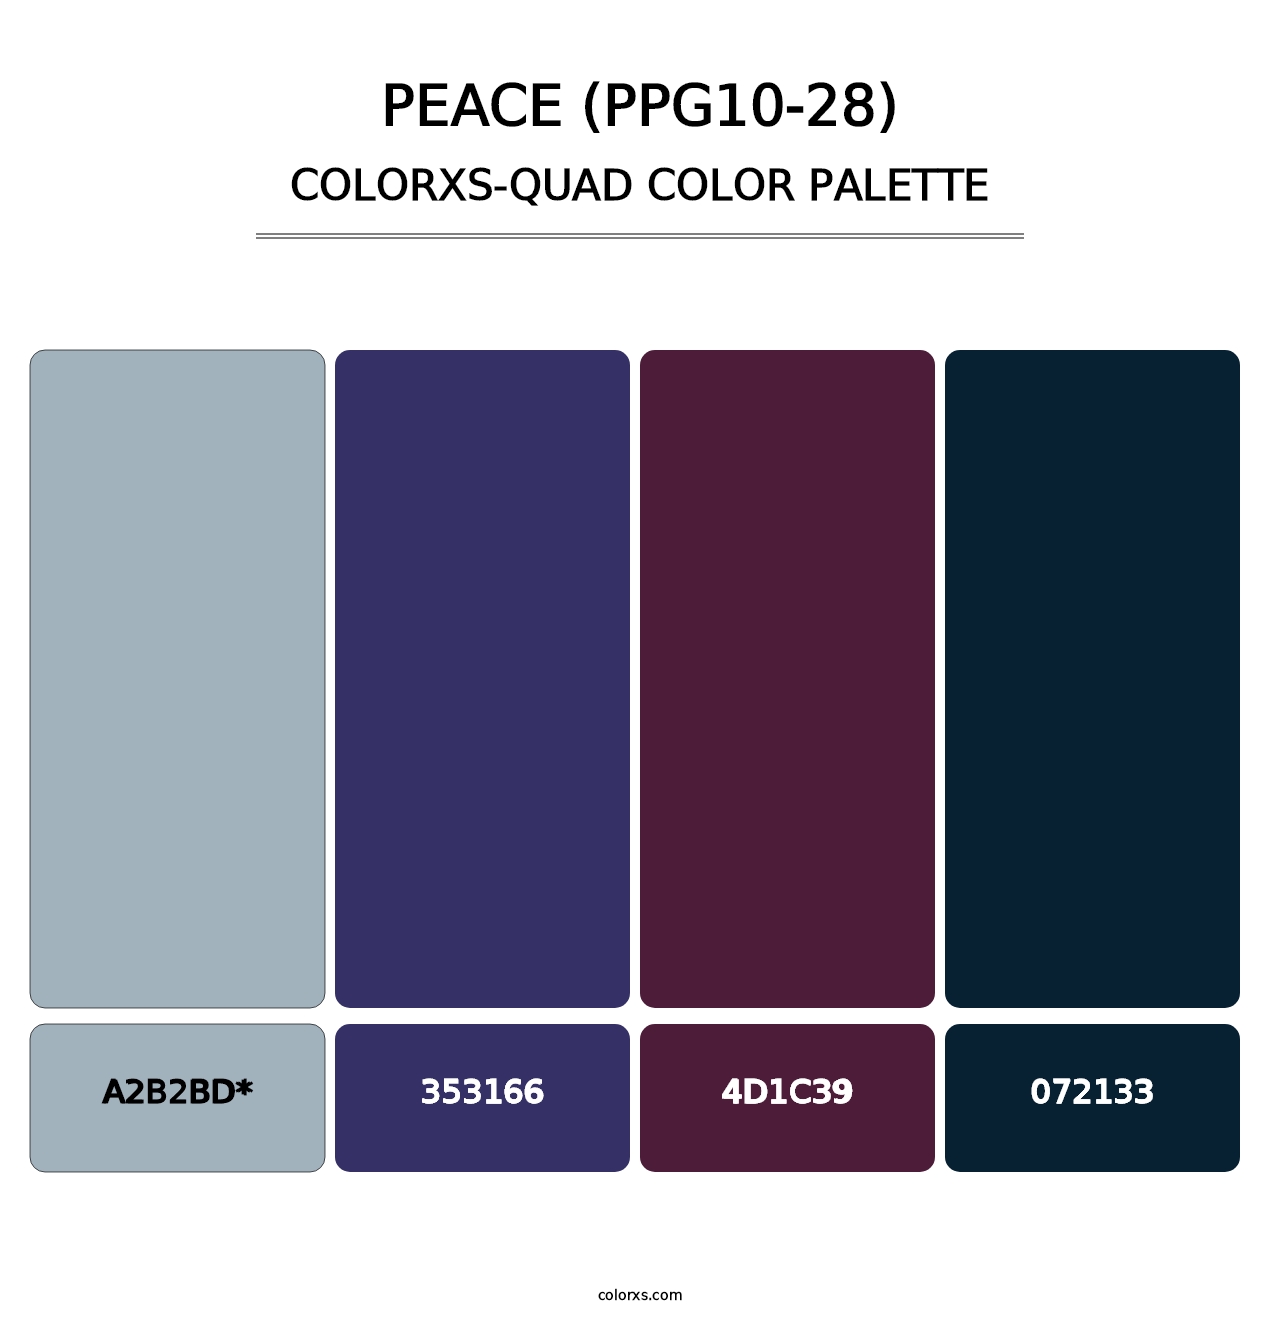 Peace (PPG10-28) - Colorxs Quad Palette